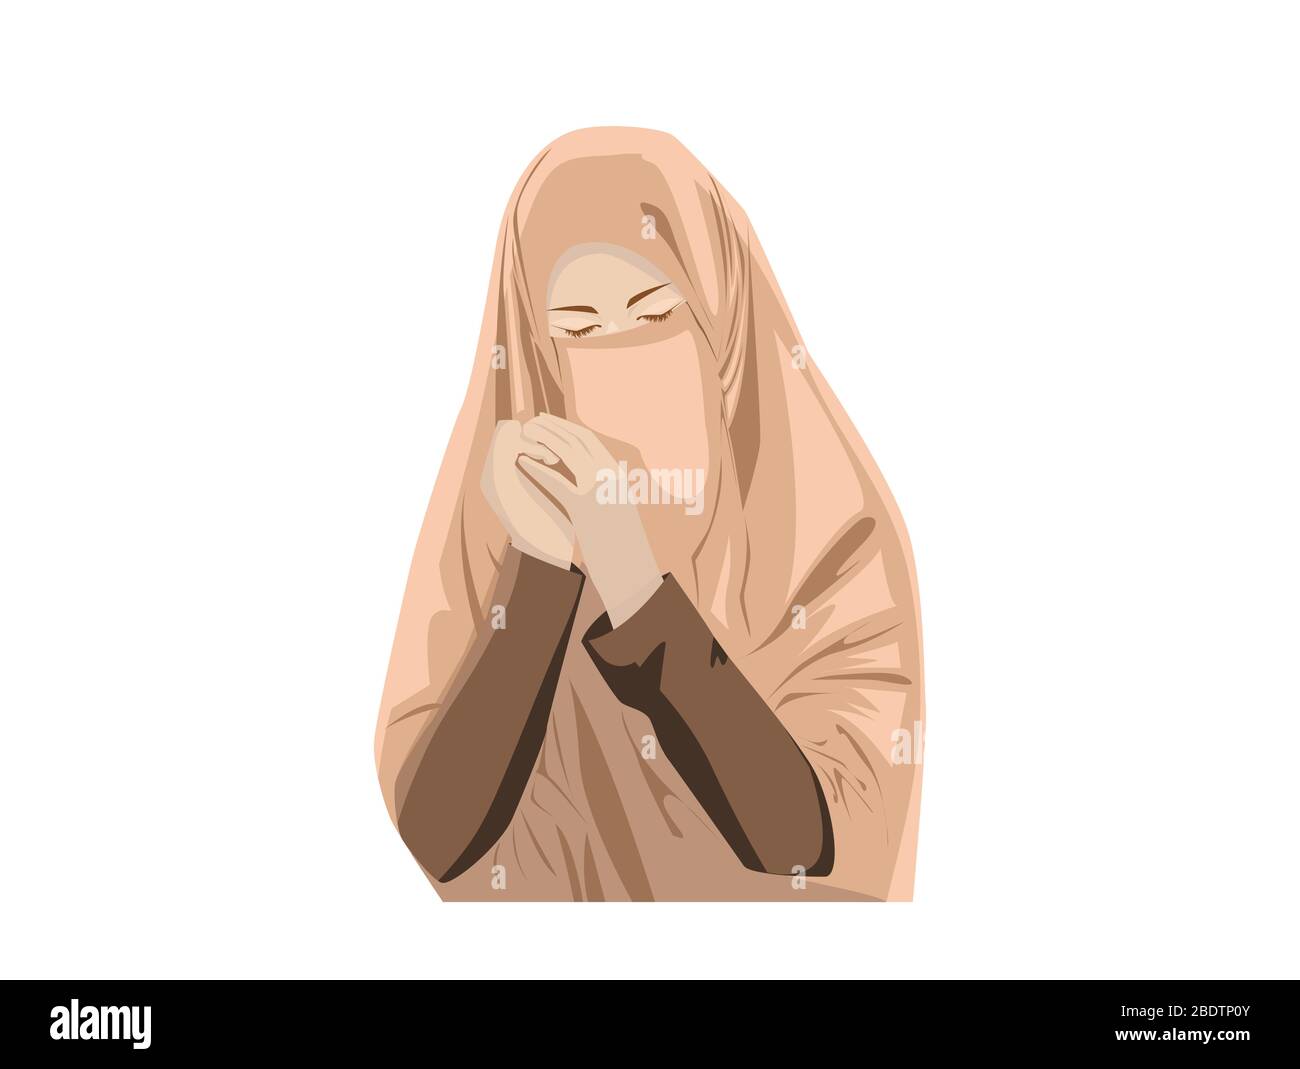 Beautiful Muslim Women with Niqab. Cartoon of Islamic Women in Niqab Stock  Vector Image & Art - Alamy